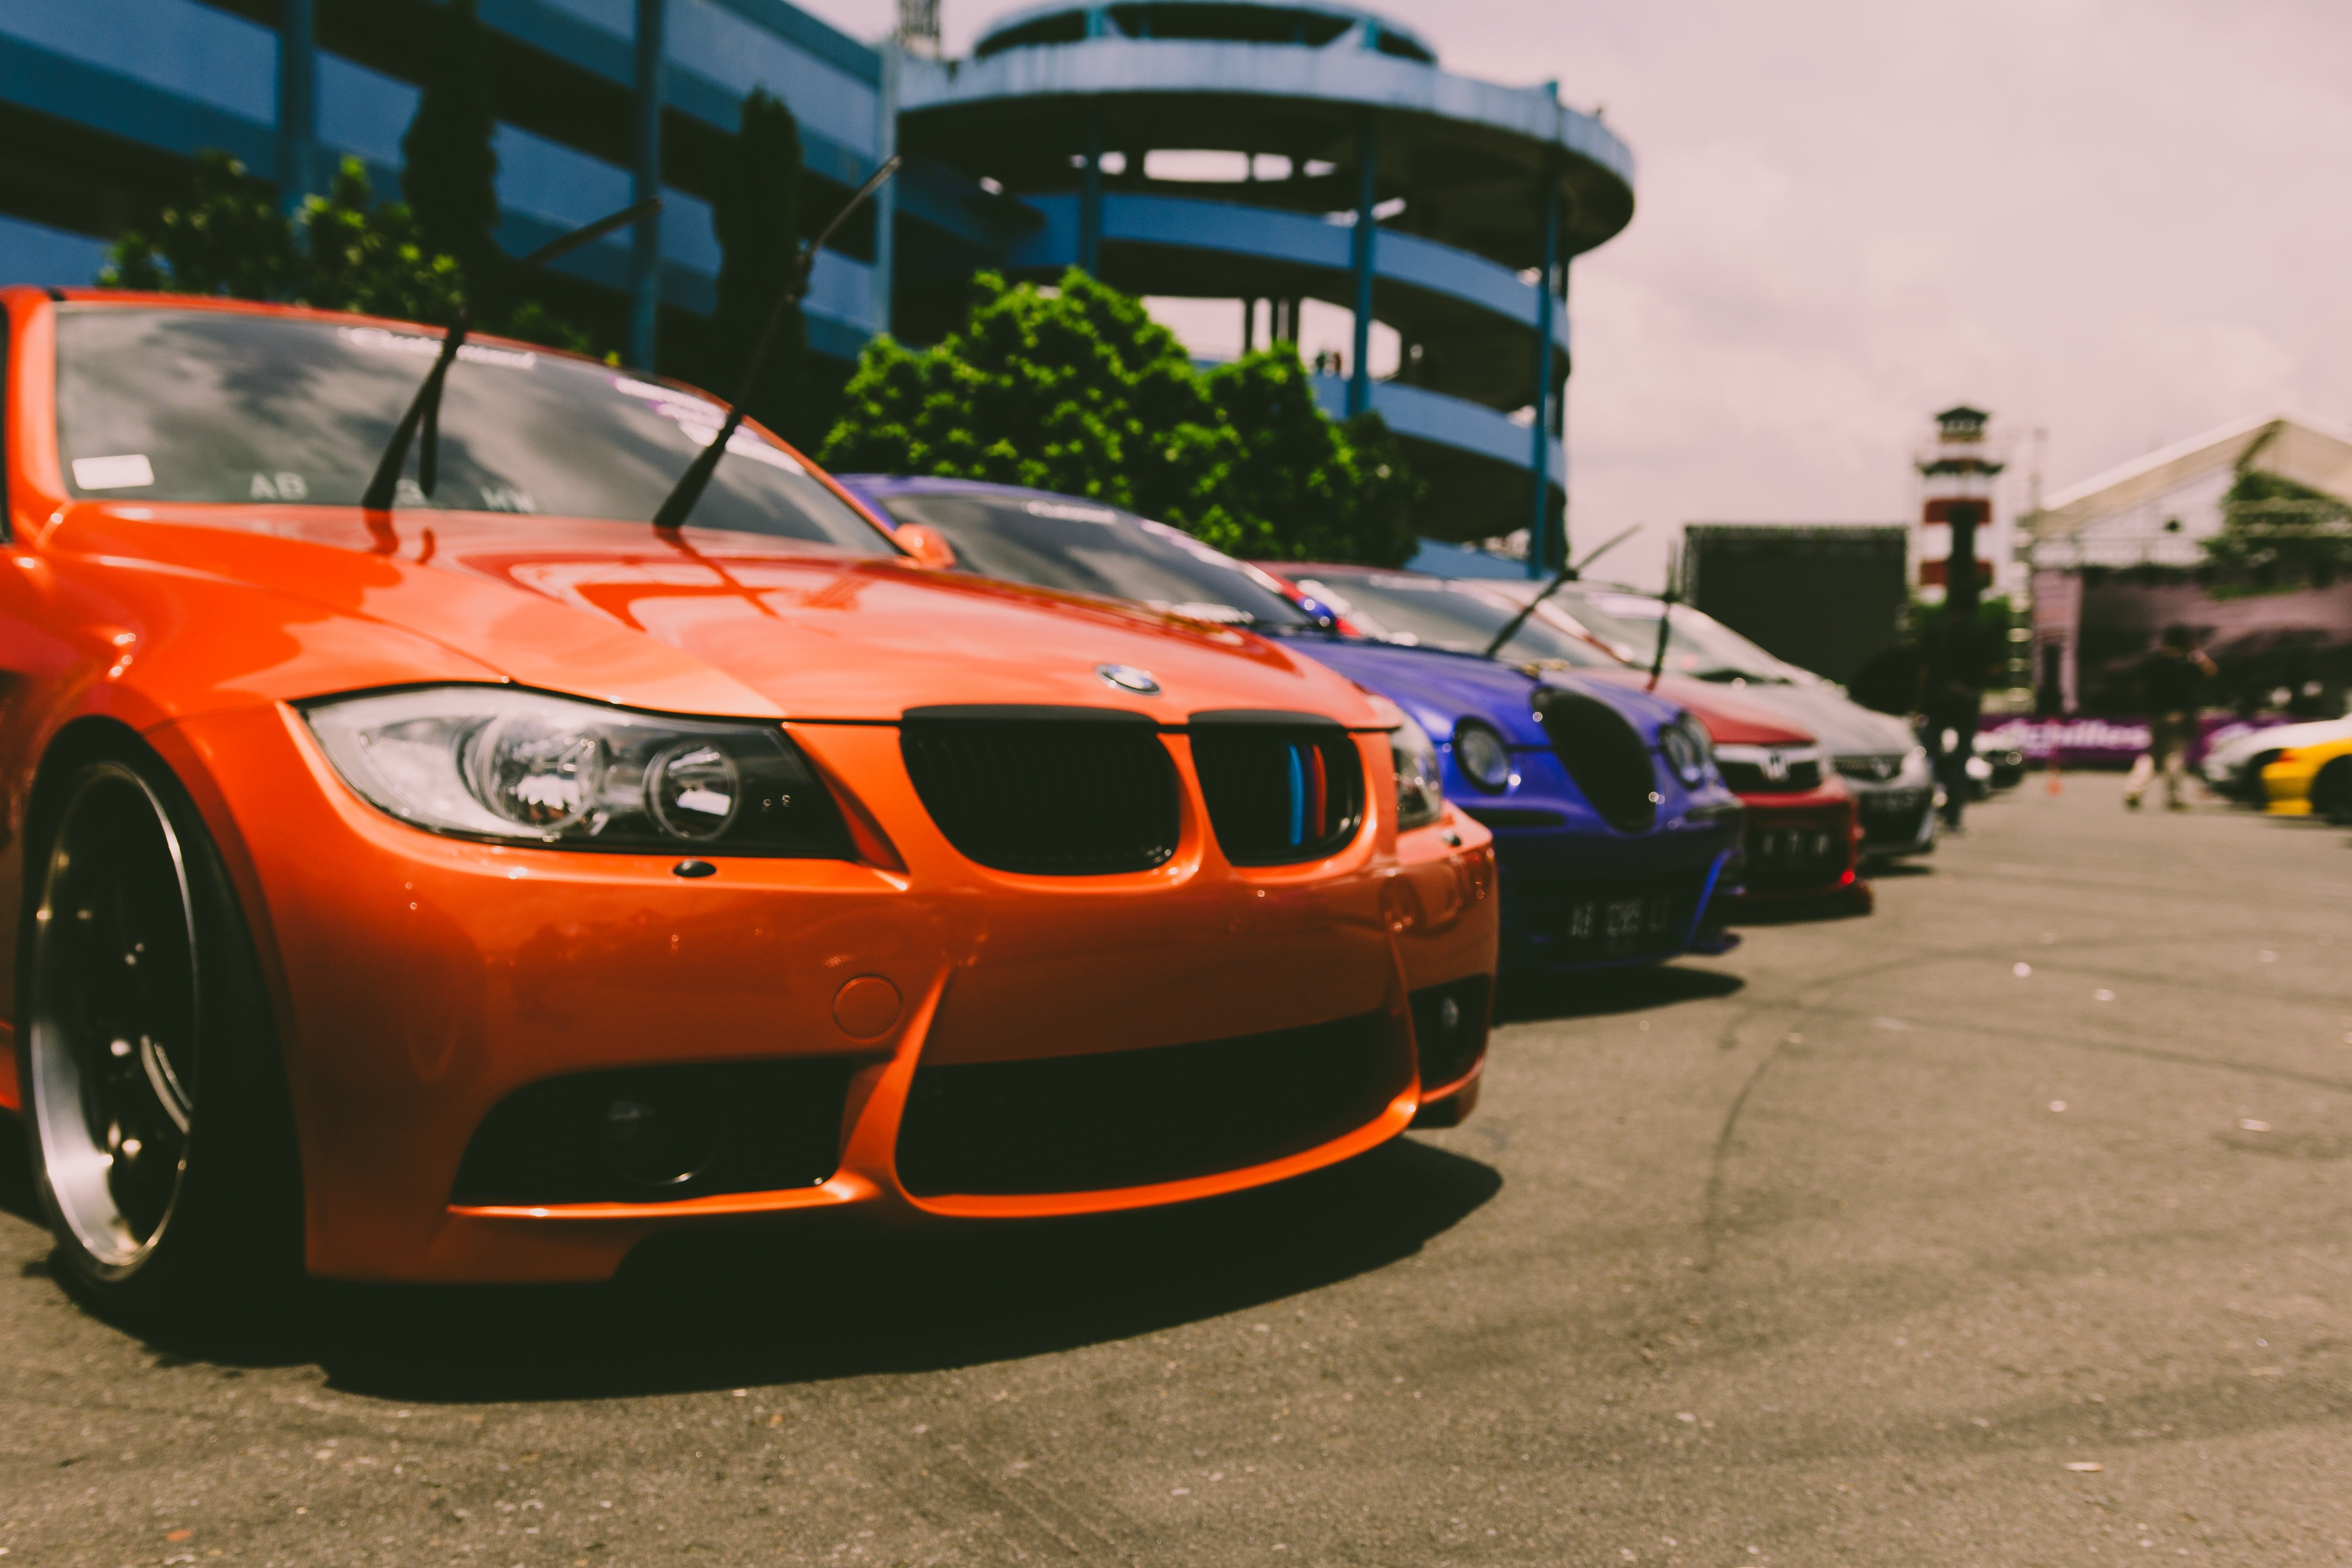 Car dealership. | Source: Pexels